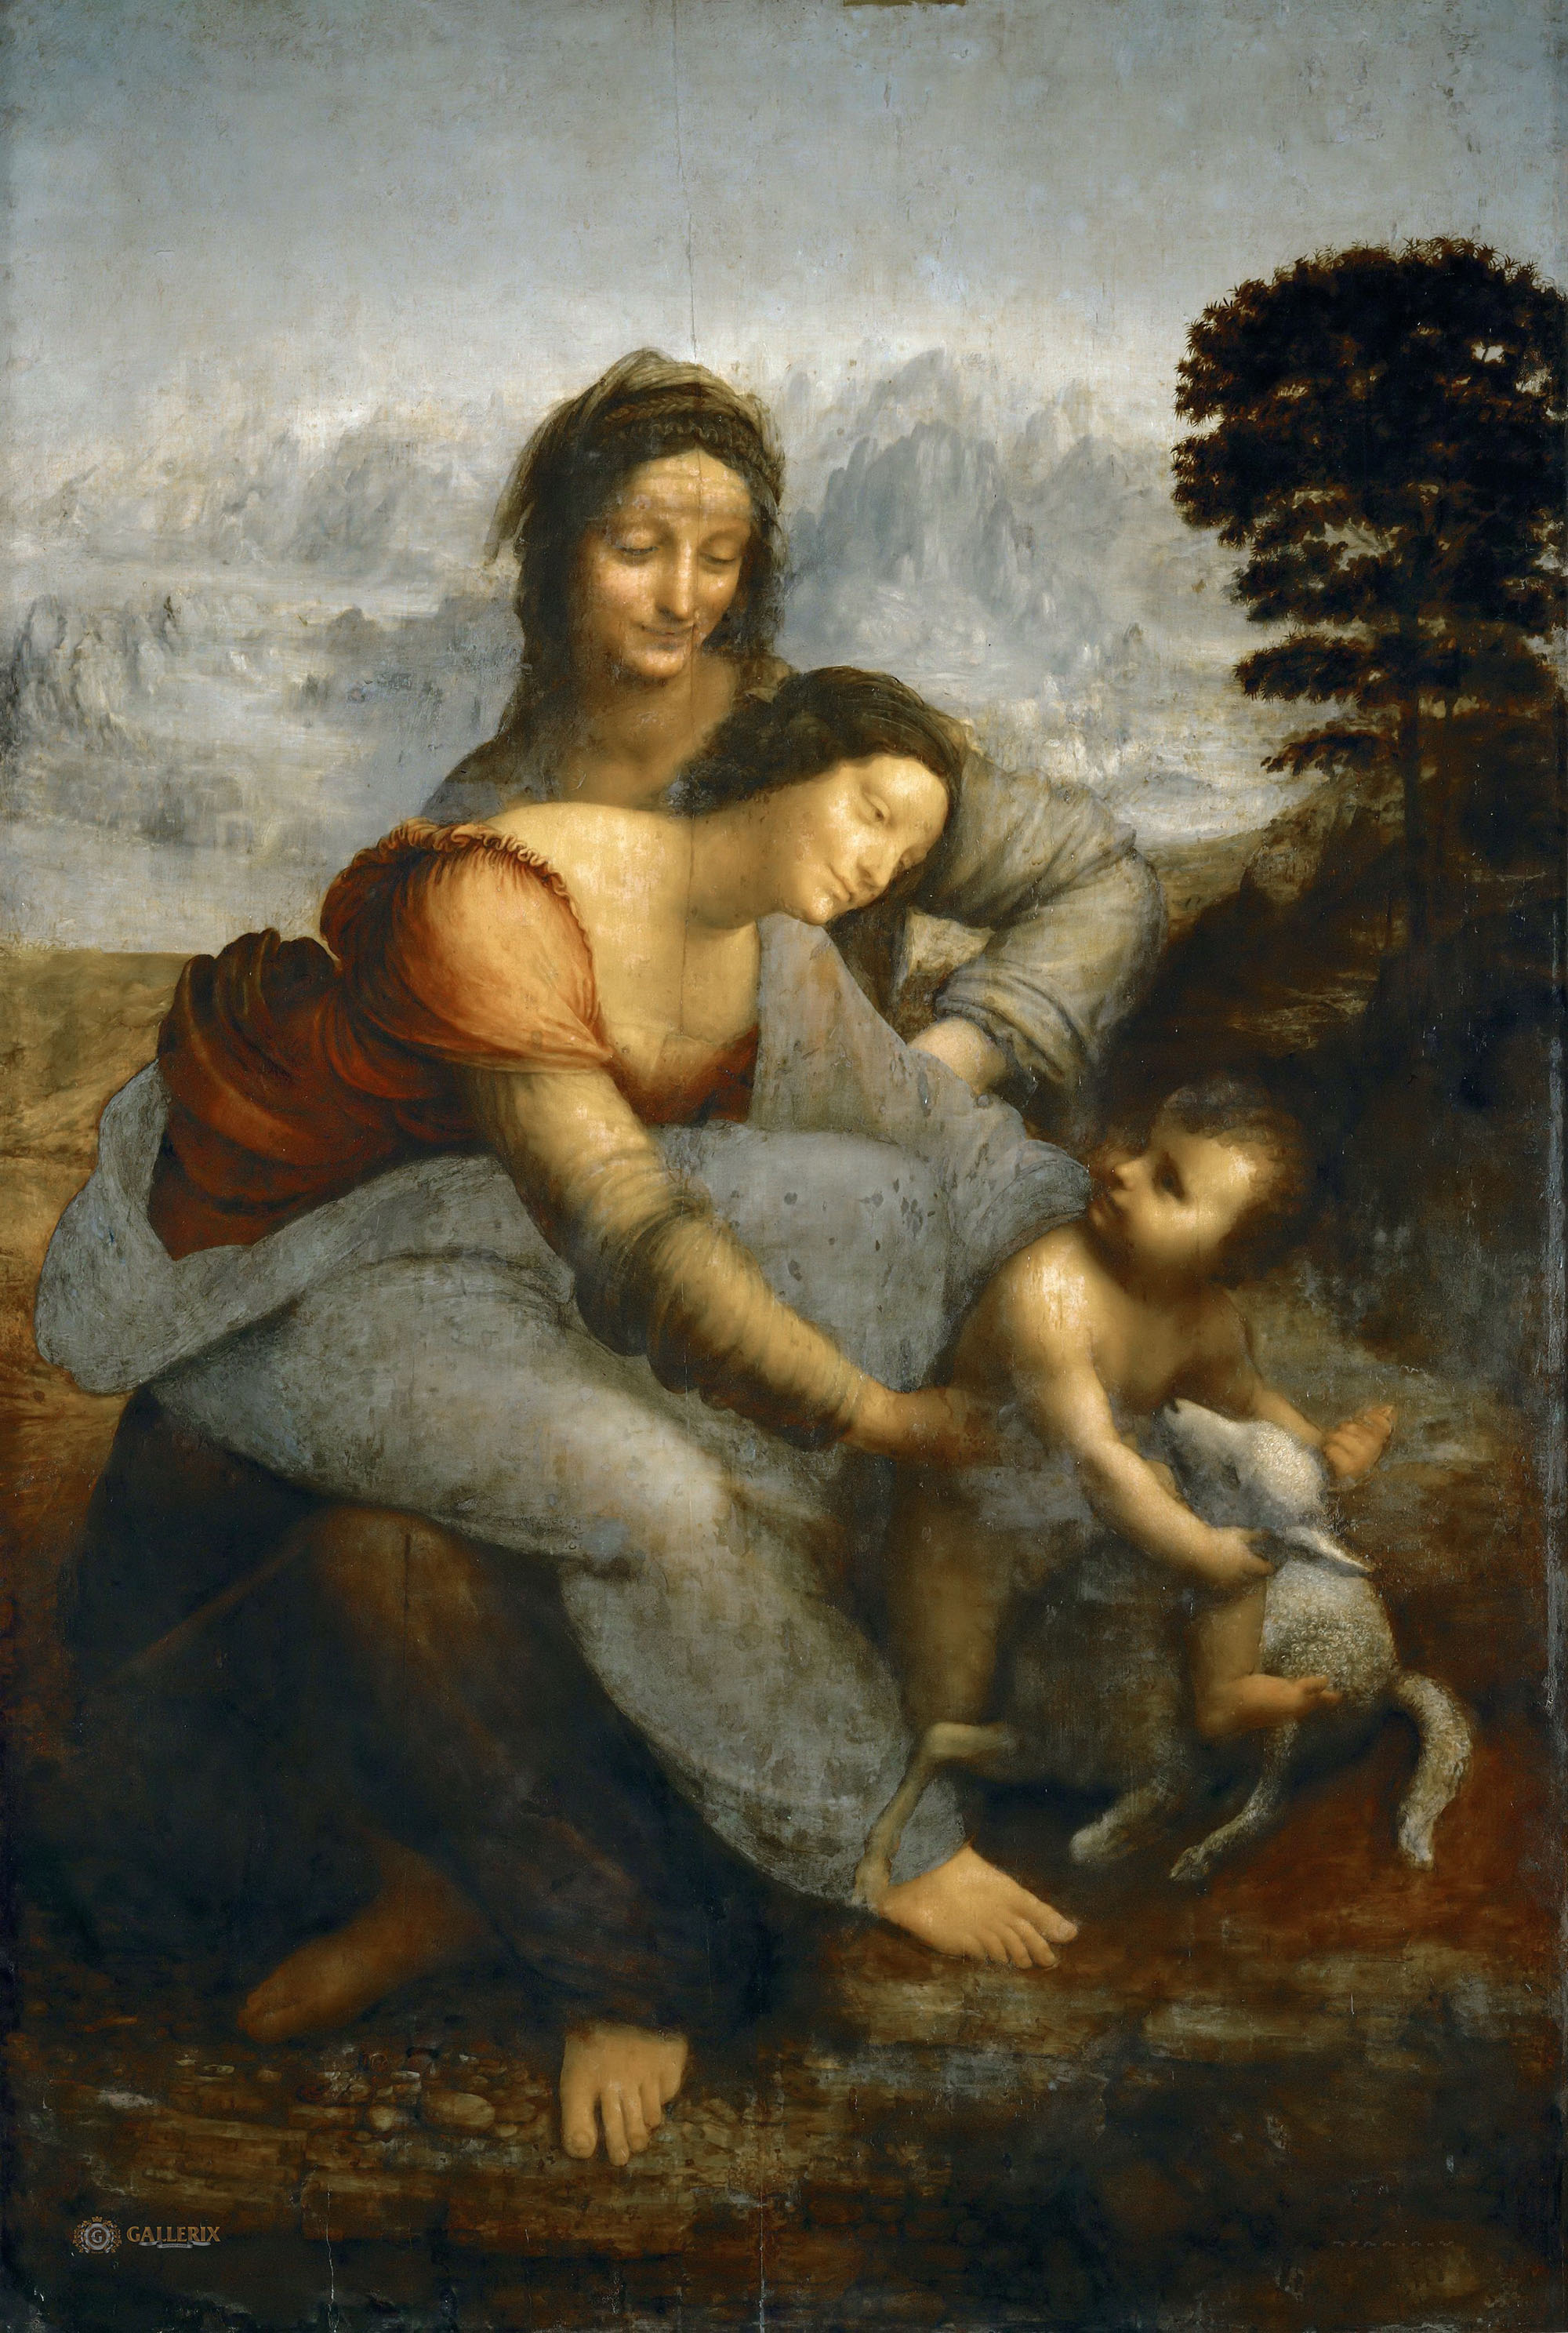 Леонардо да Винчи. "Мадонна с Младенцем и святой Анной". 1508-1519. Лувр, Париж.